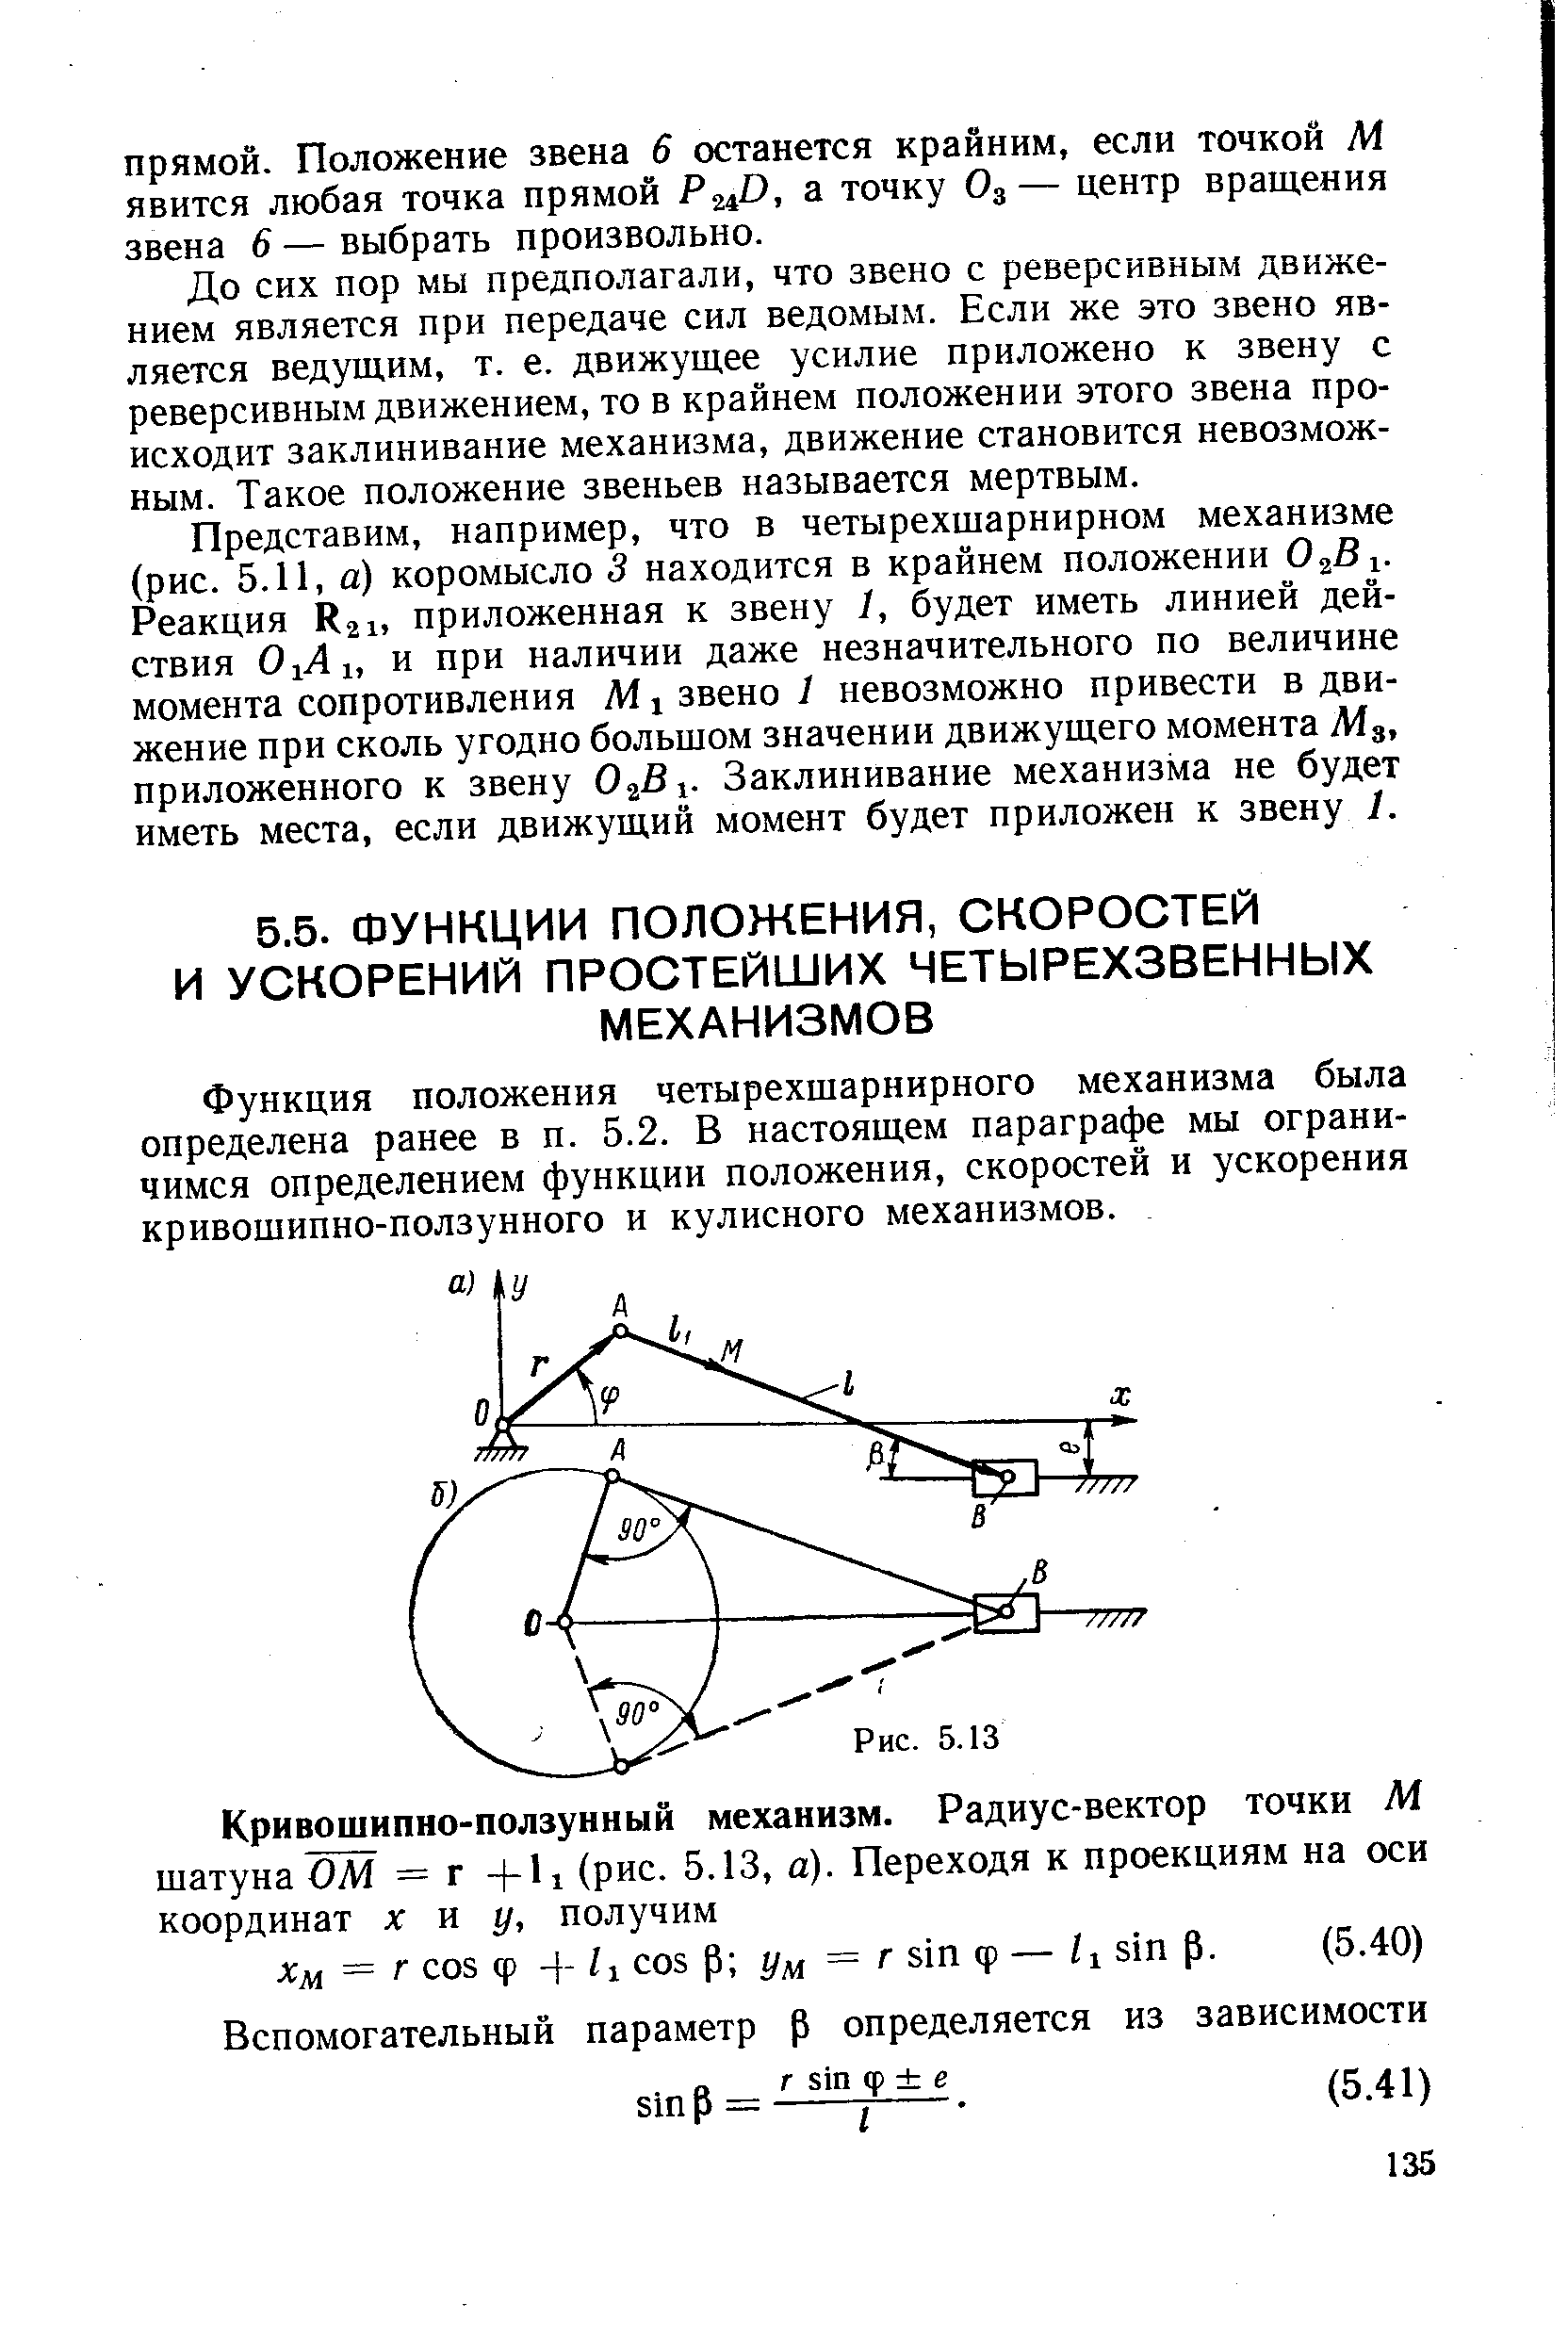 Функция положения четырехшарнирного механизма была определена ранее в п. 5.2. В настоящем параграфе мы ограничимся определением функции положения, скоростей и ускорения кривошипно-ползунного и кулисного механизмов.
